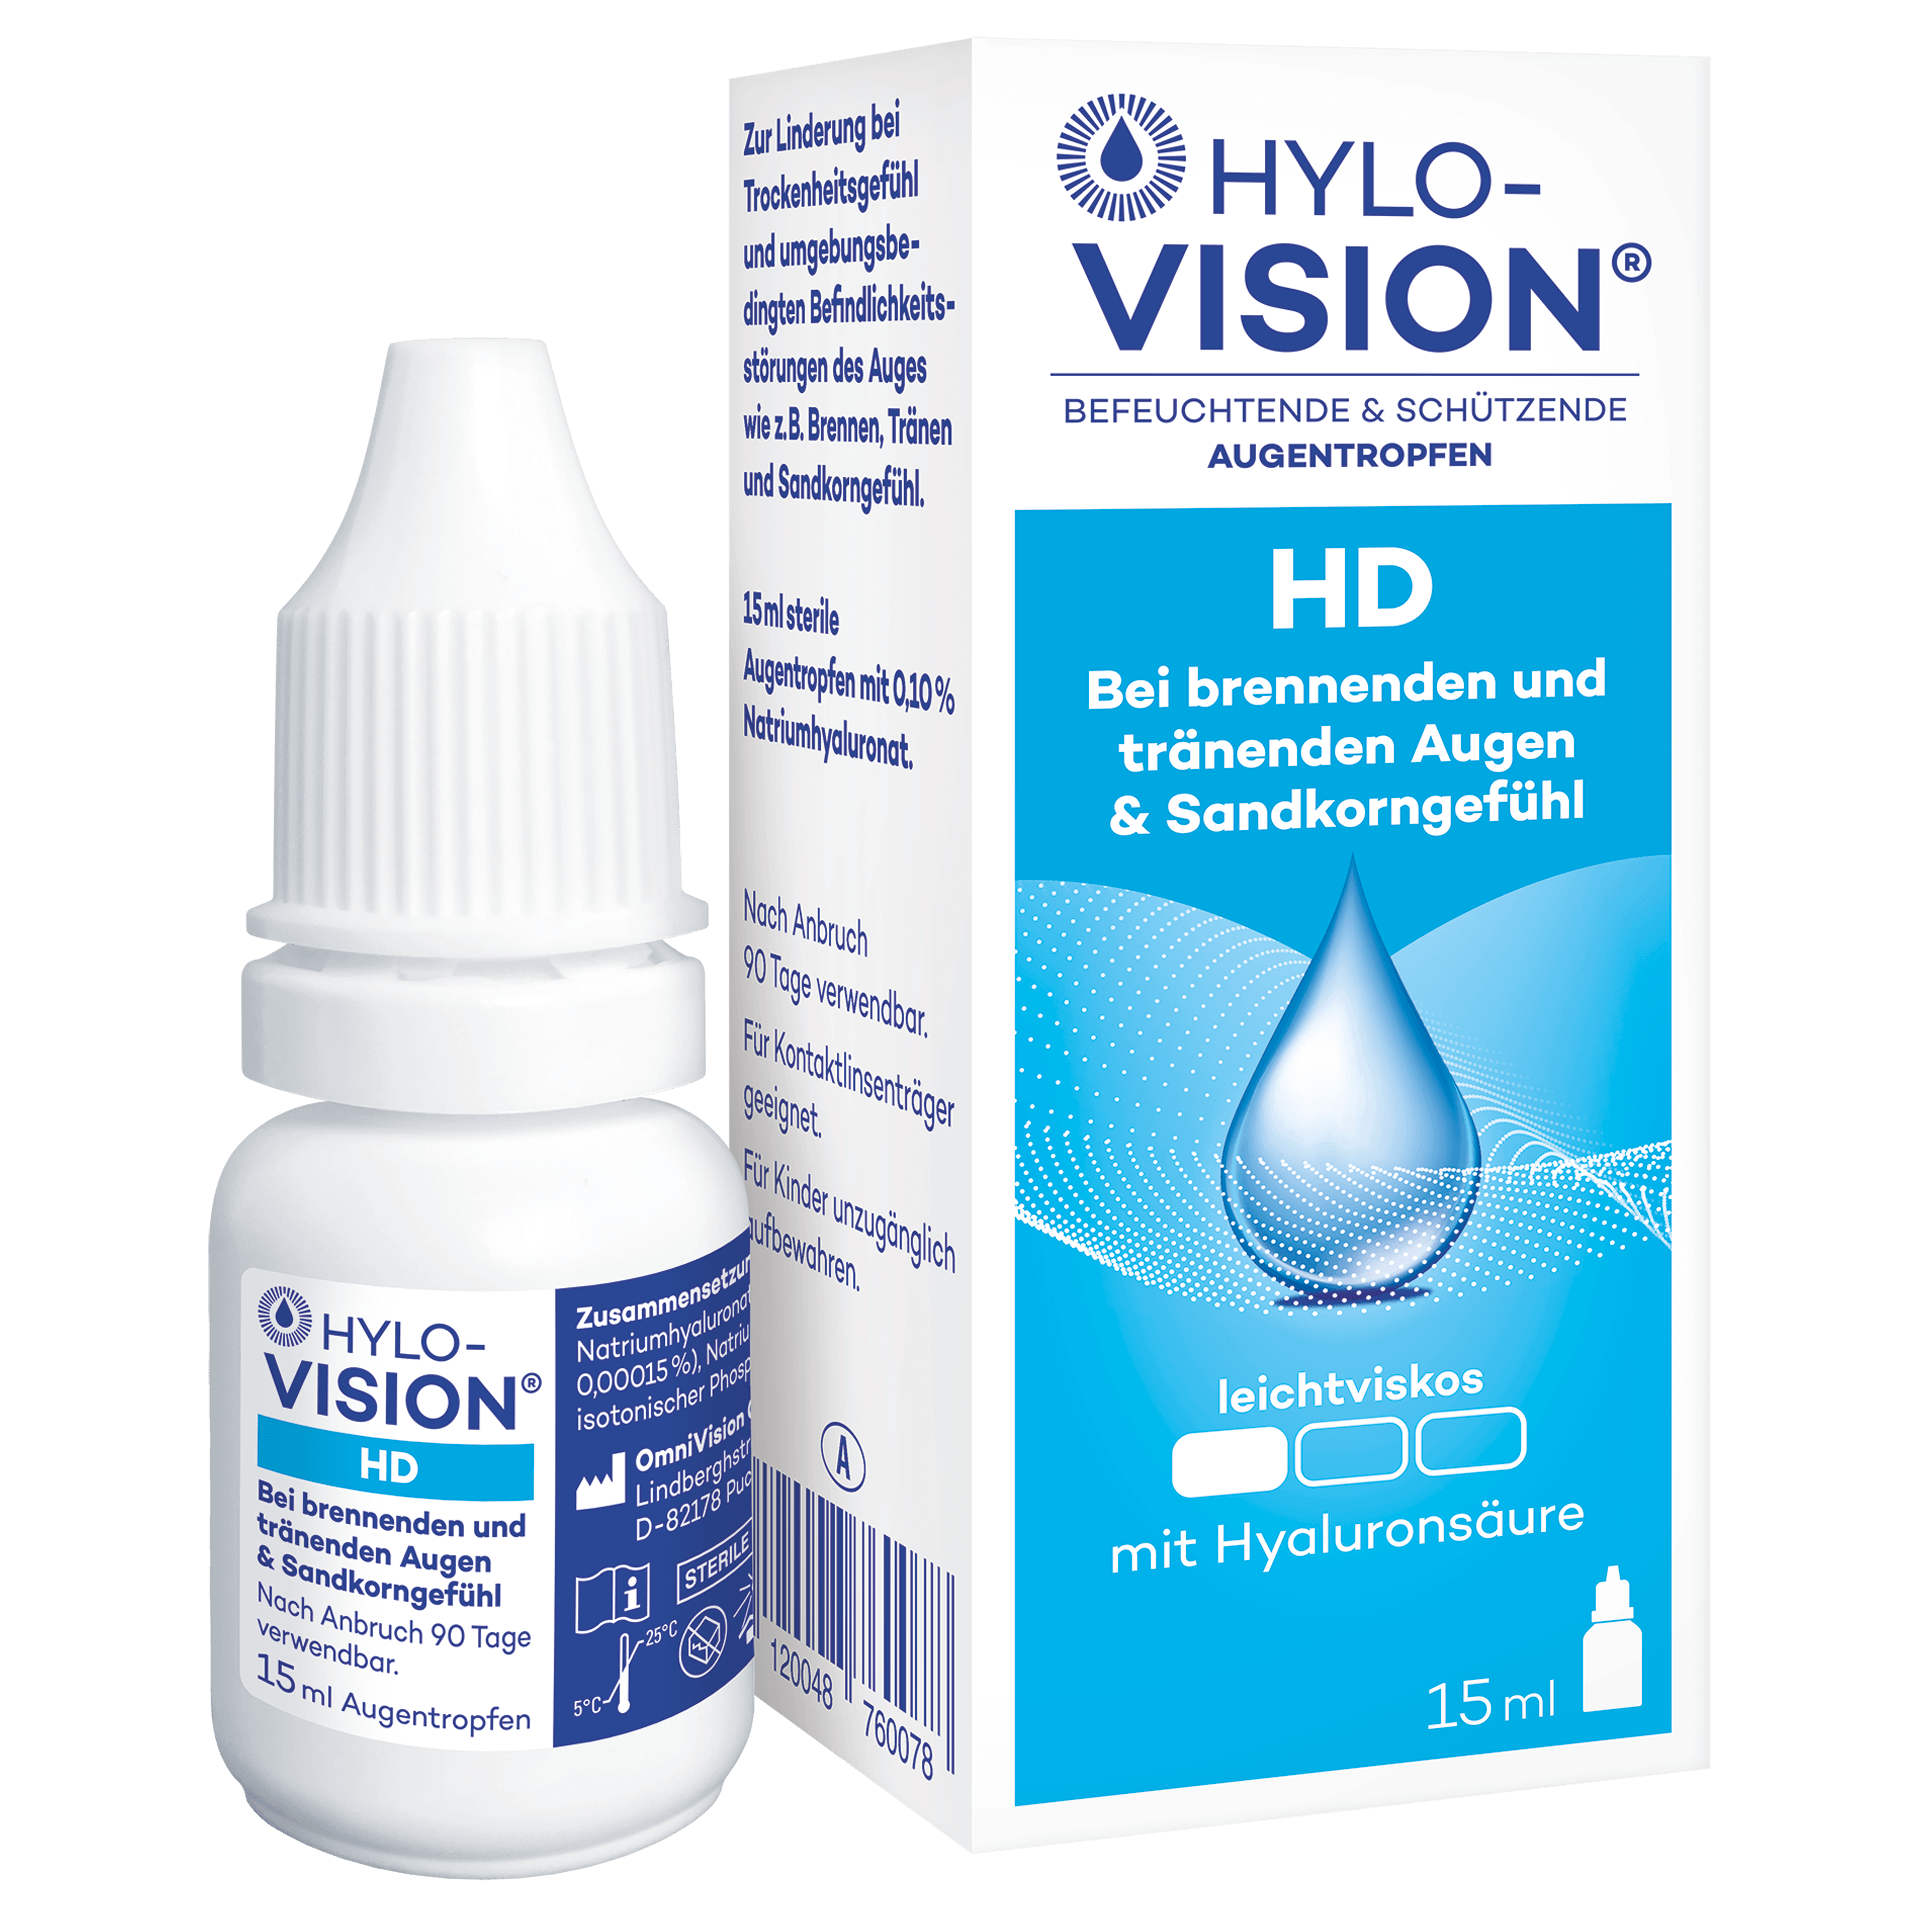 Hylo-Vision HD Packshot